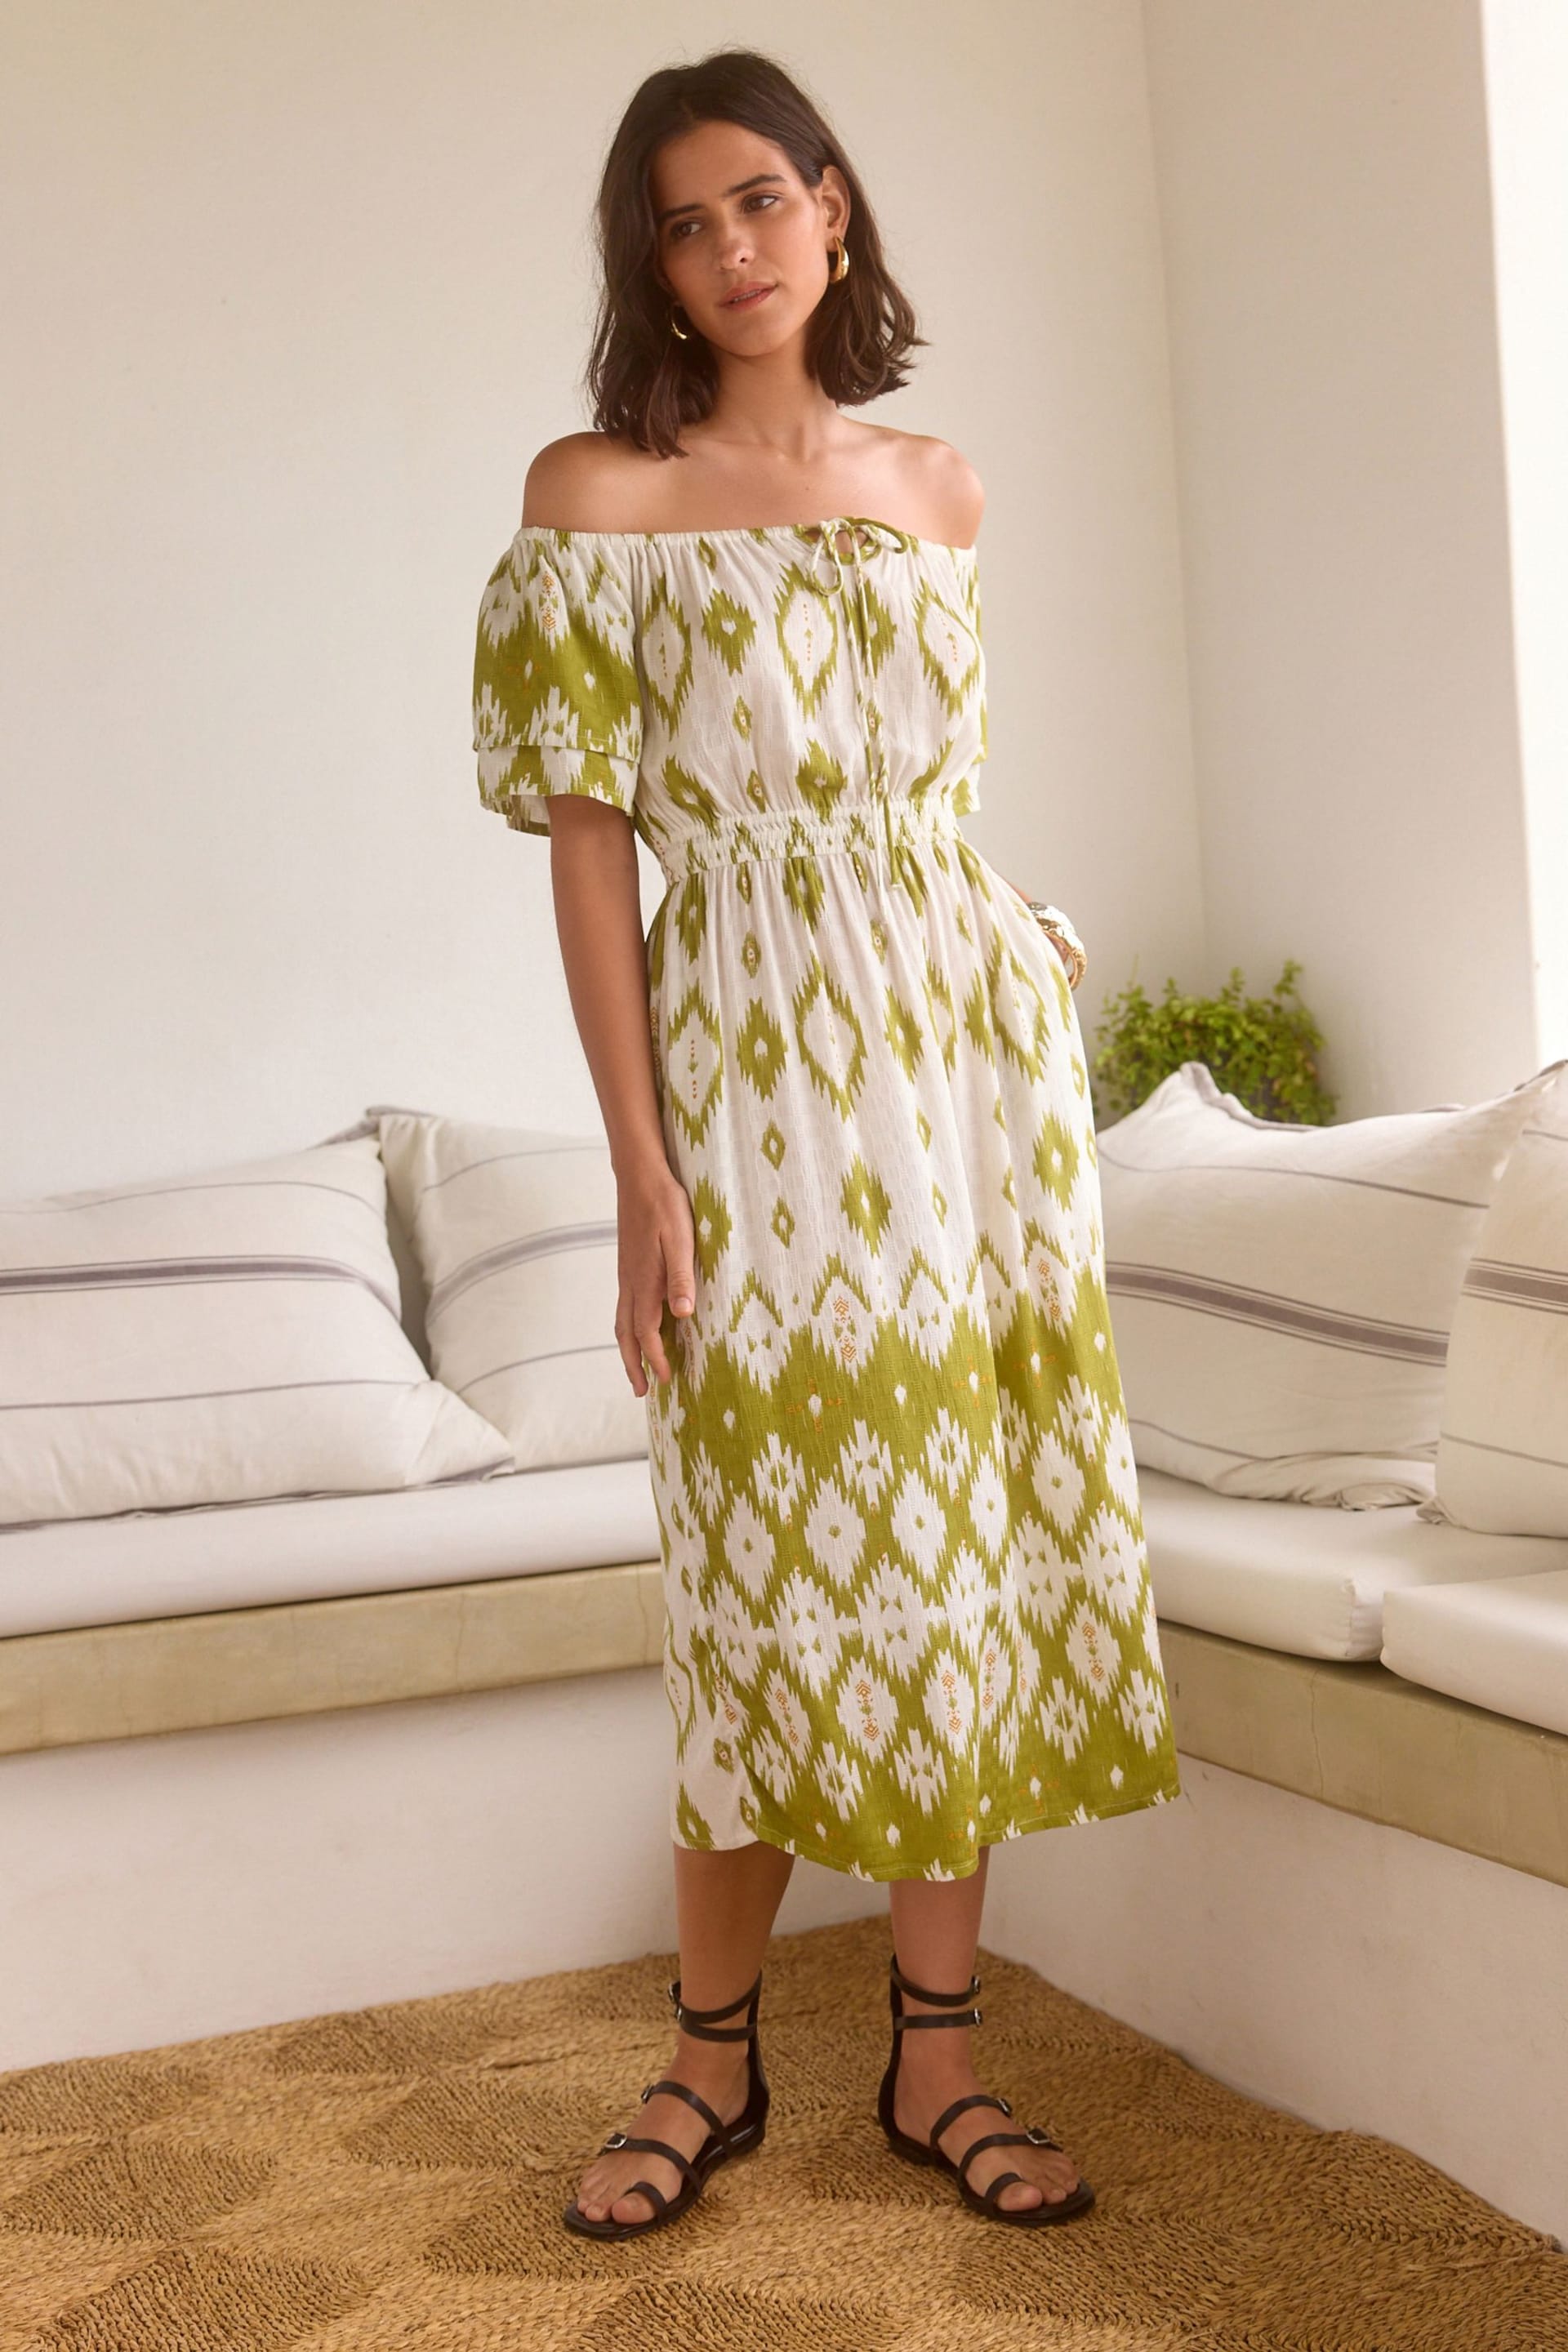 White/Green Off Shoulder Summer Dress - Image 2 of 6